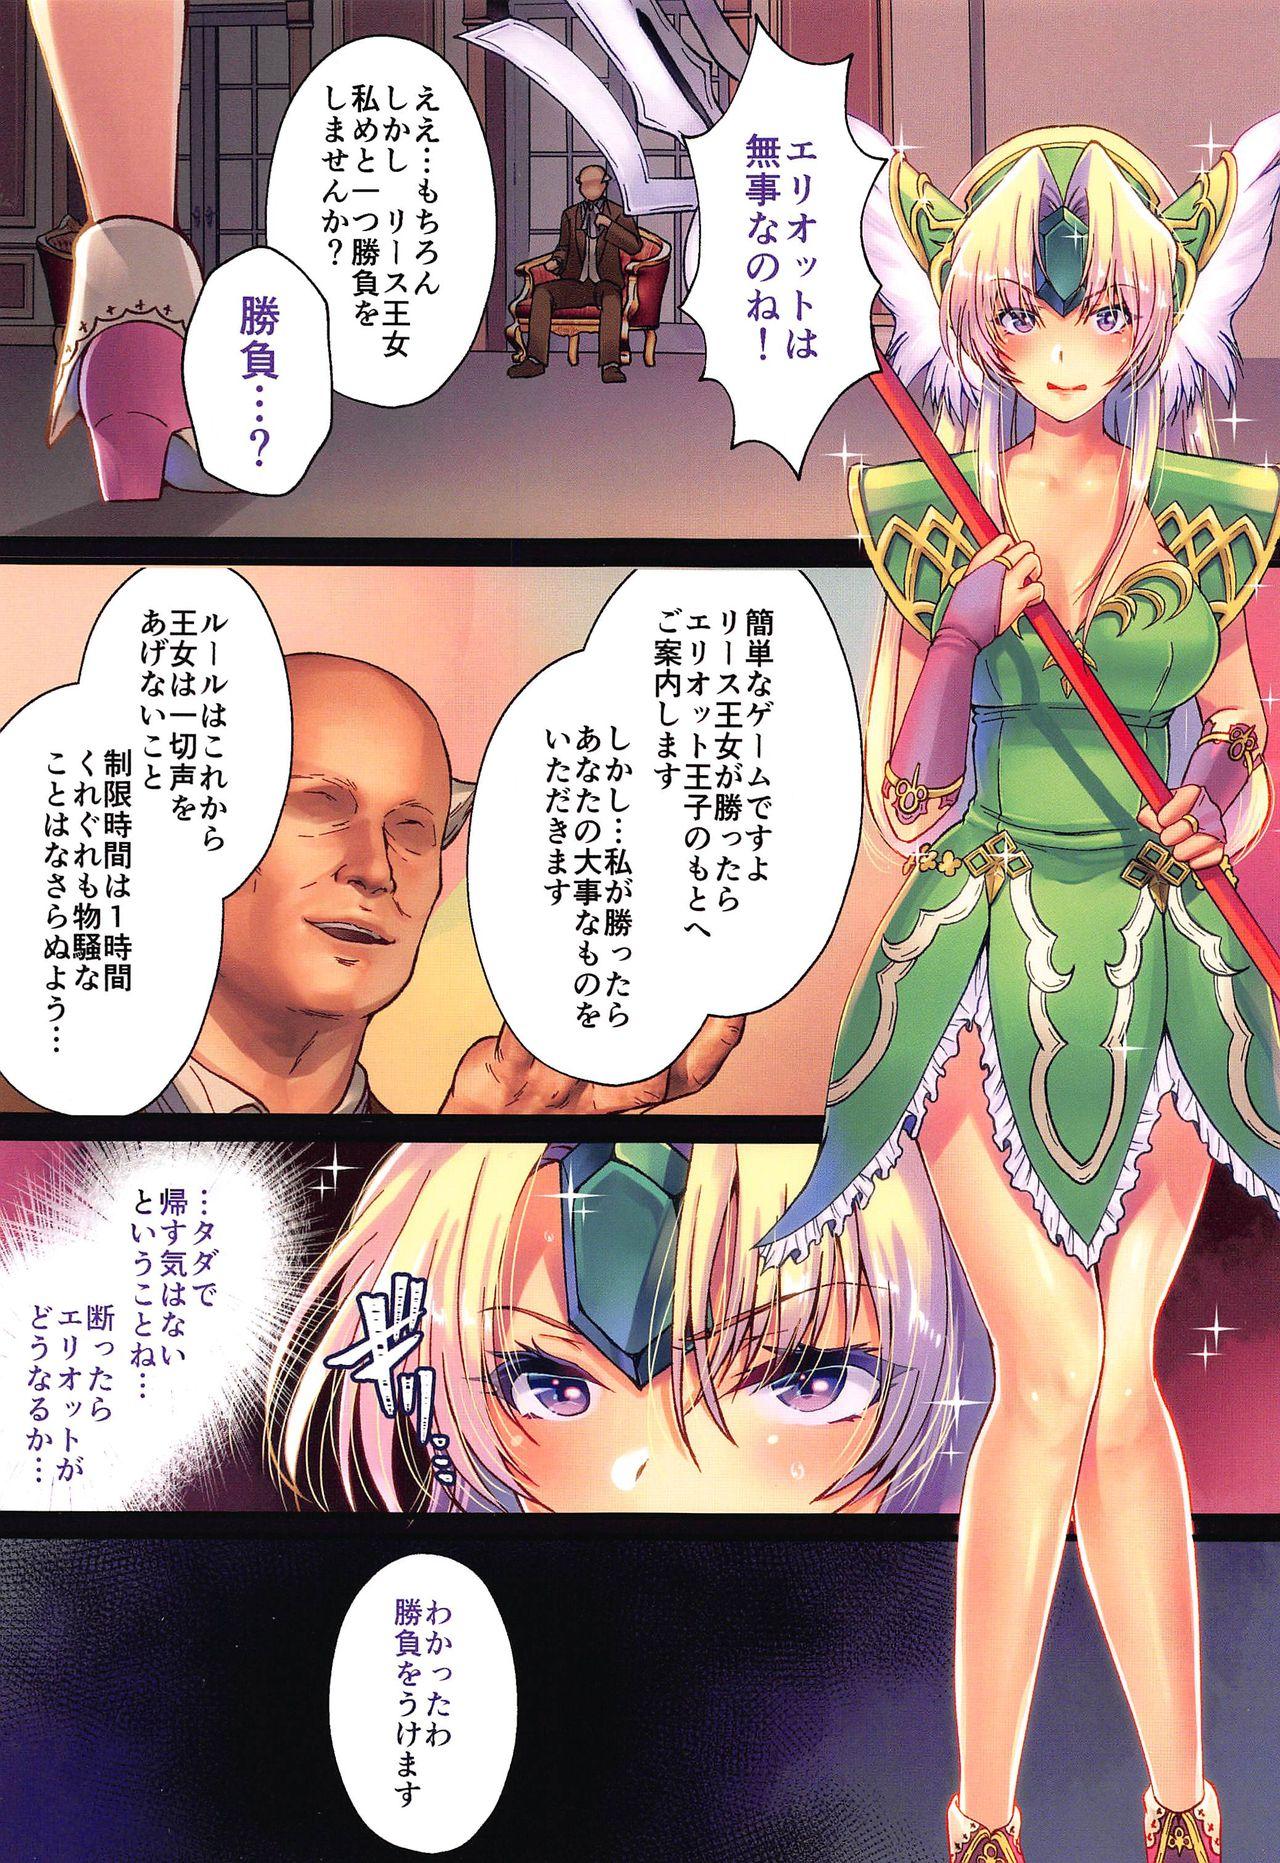 Nena Legend of SicoRiesZ - Seiken densetsu 3 Hogtied - Page 2